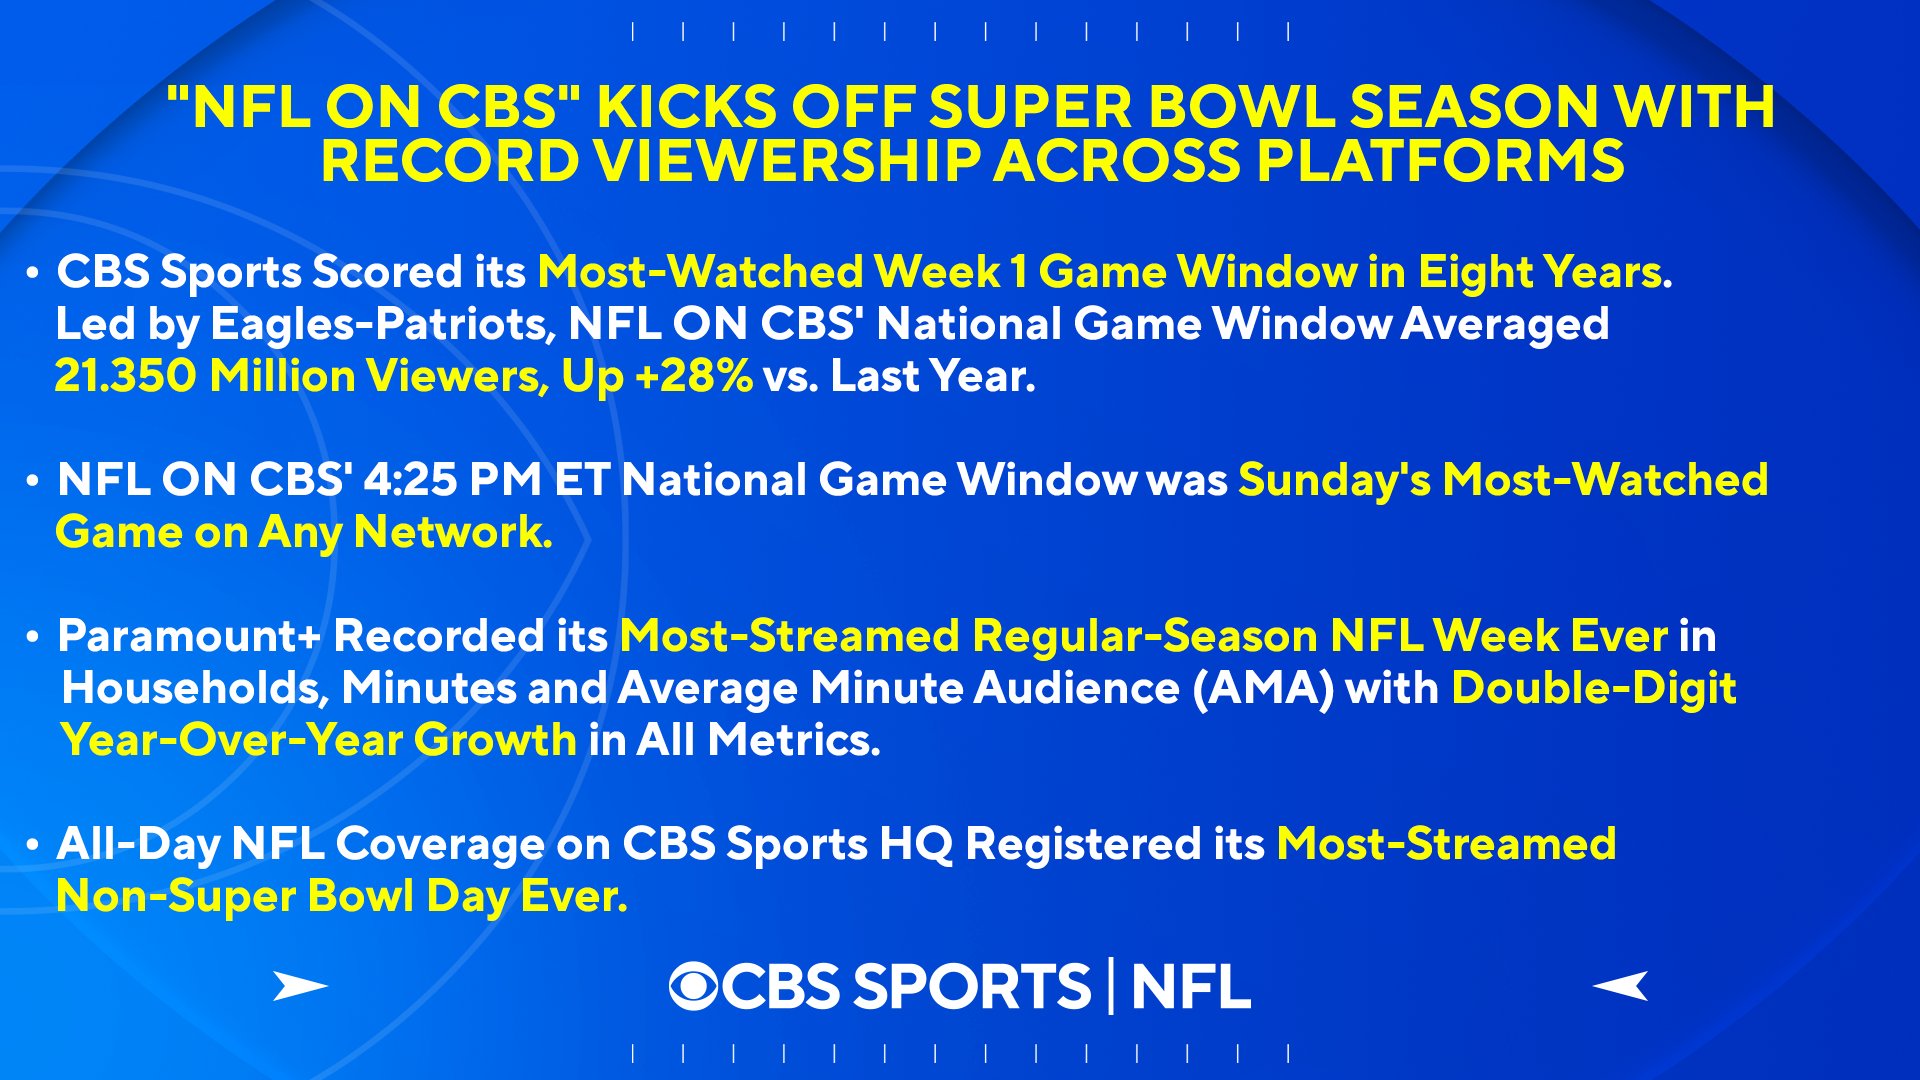 CBS Sports PR on X: 'The NFL ON CBS kicks off Super Bowl season